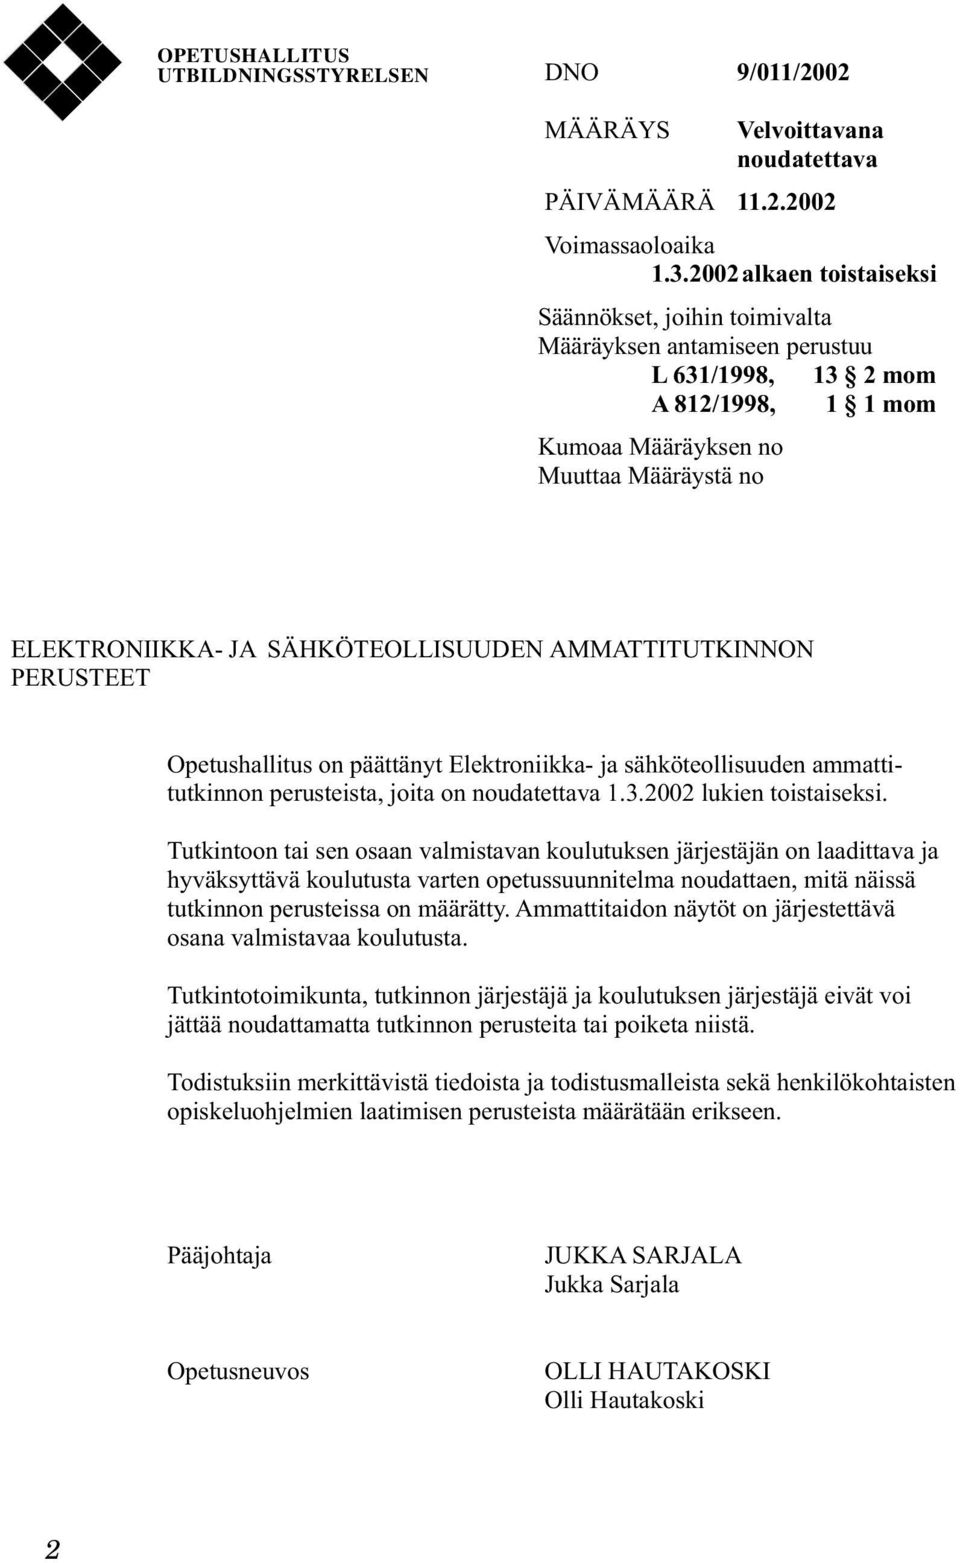 SÄHKÖTEOLLISUUDEN AMMATTITUTKINNON PERUSTEET Opetushallitus on päättänyt Elektroniikka- ja sähköteollisuuden ammattitutkinnon perusteista, joita on noudatettava 1.3.2002 lukien toistaiseksi.